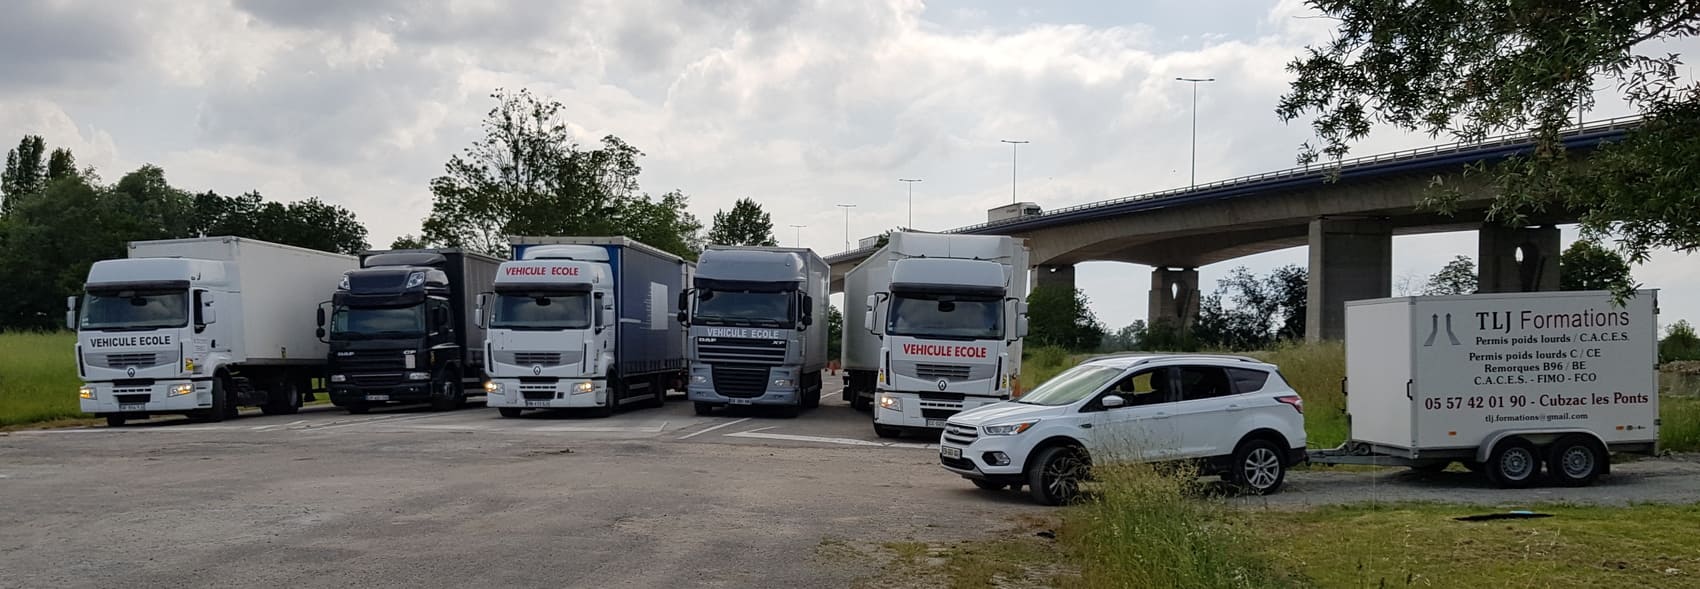 Flotte des véhicules, camions et remorques du centre de formations routier TLJ Formations en Aquitaine